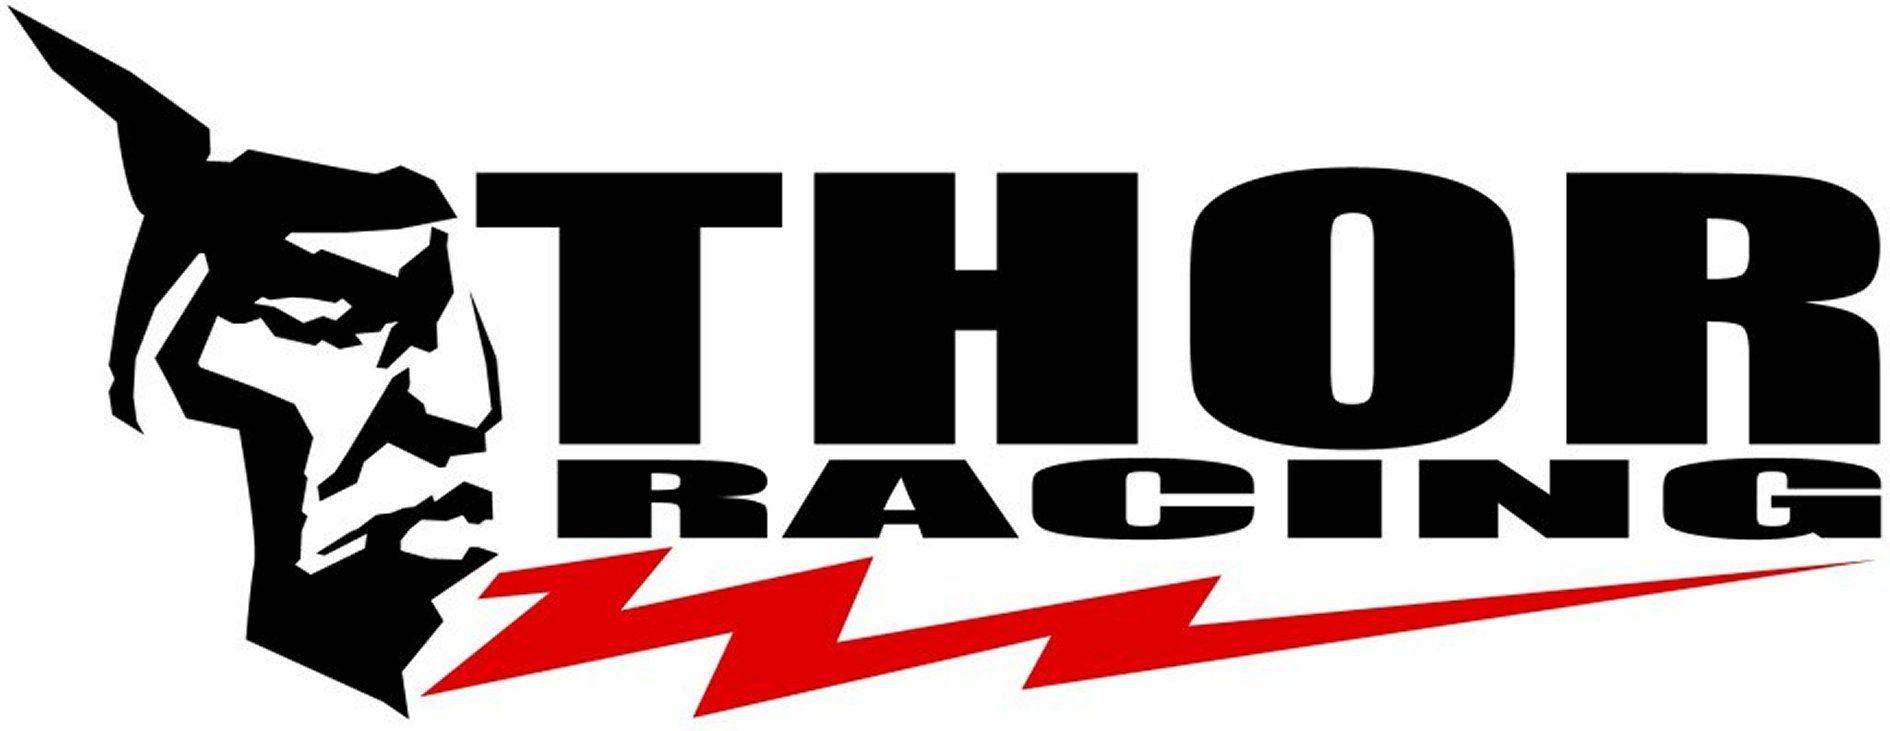 Dirt Bike Racing Logo - Thor moto Logos